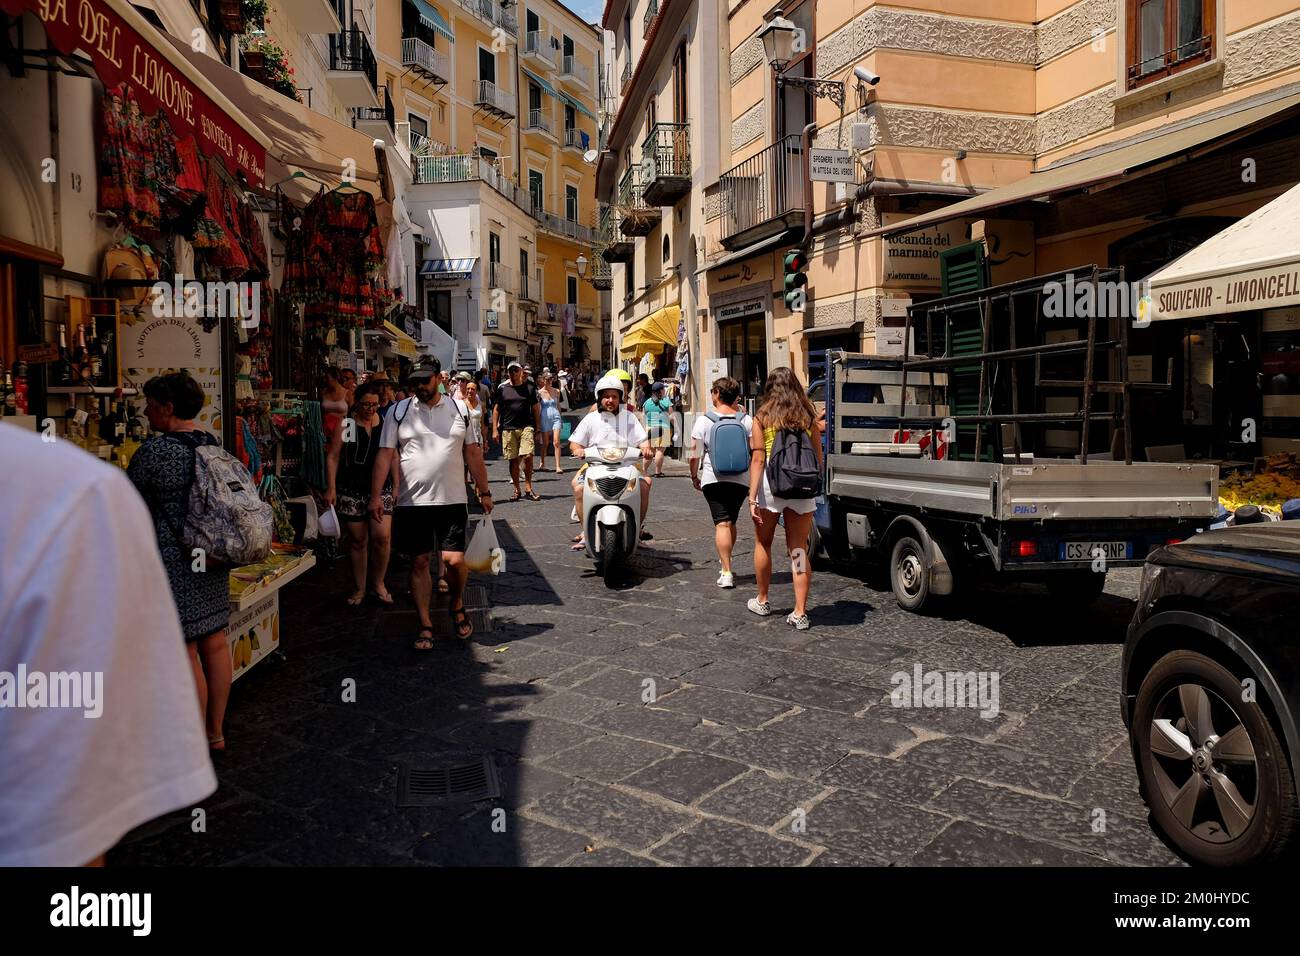 Vue générale sur la ville d'Amalfi, vue sur la via Lorenzo d'Amalfi, montrant la rue étroite animée pleine de touristes. Banque D'Images